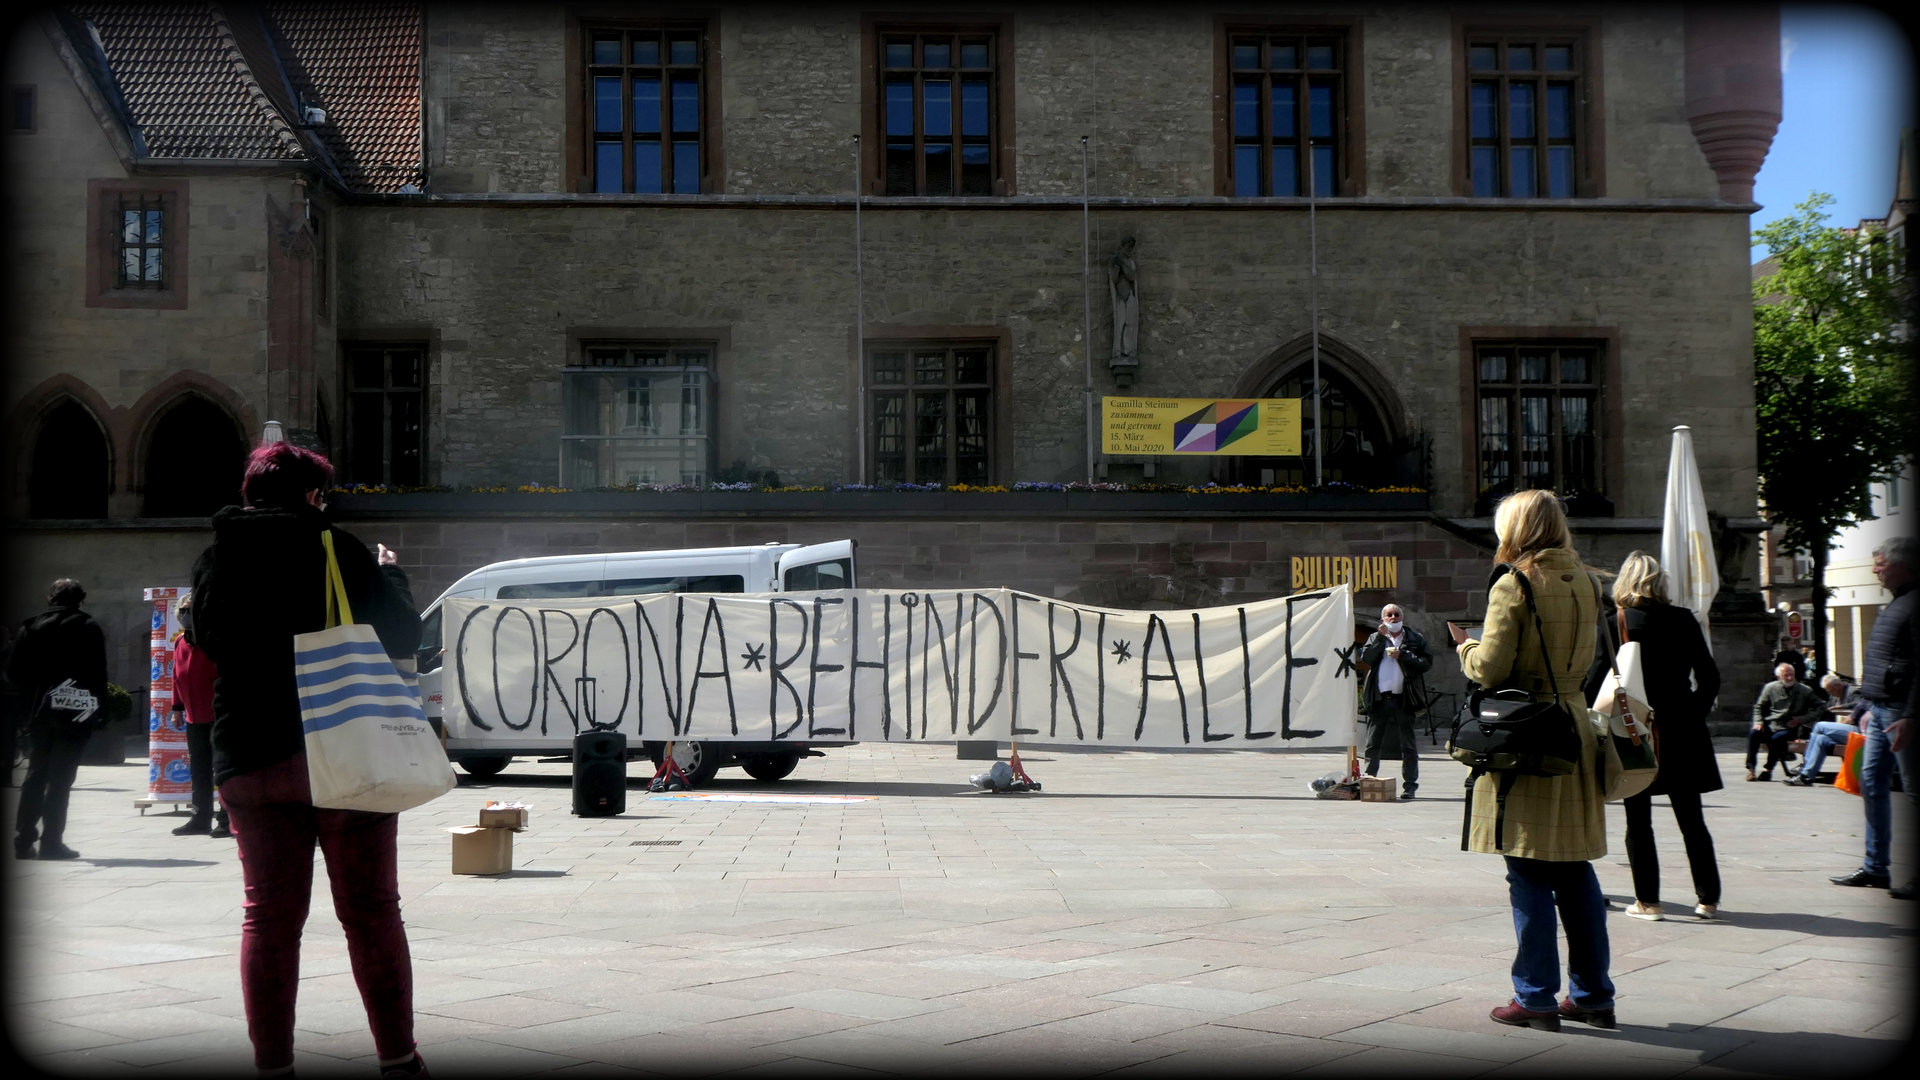 Menschen mit Transparent vor dem alten Rathaus in Göttingen. Aufschrift: "Corona behindert alle".